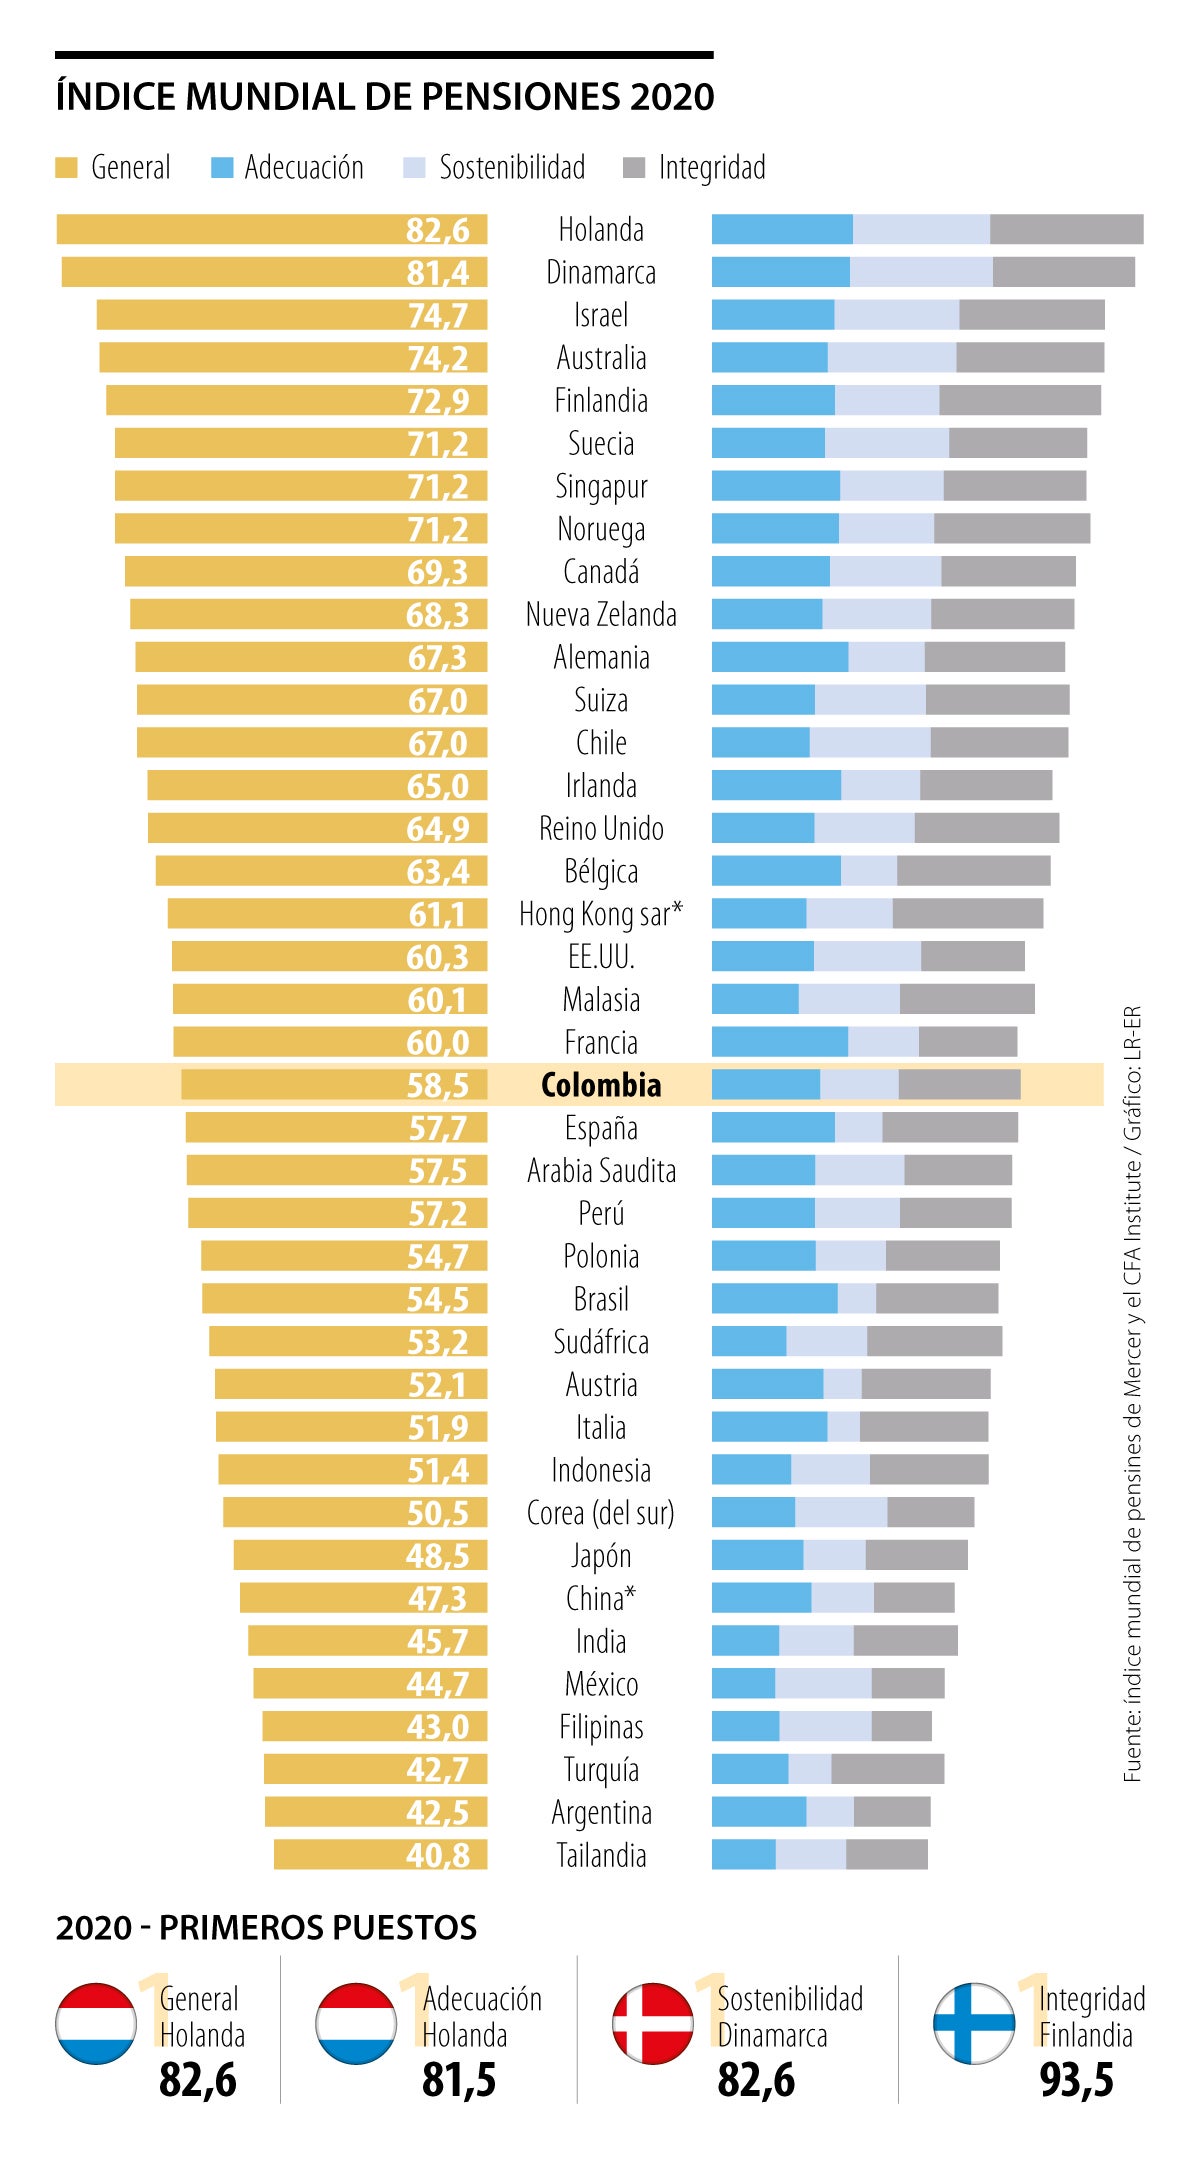 Pensiones en Colombia están mejor que en Perú y México según índice que